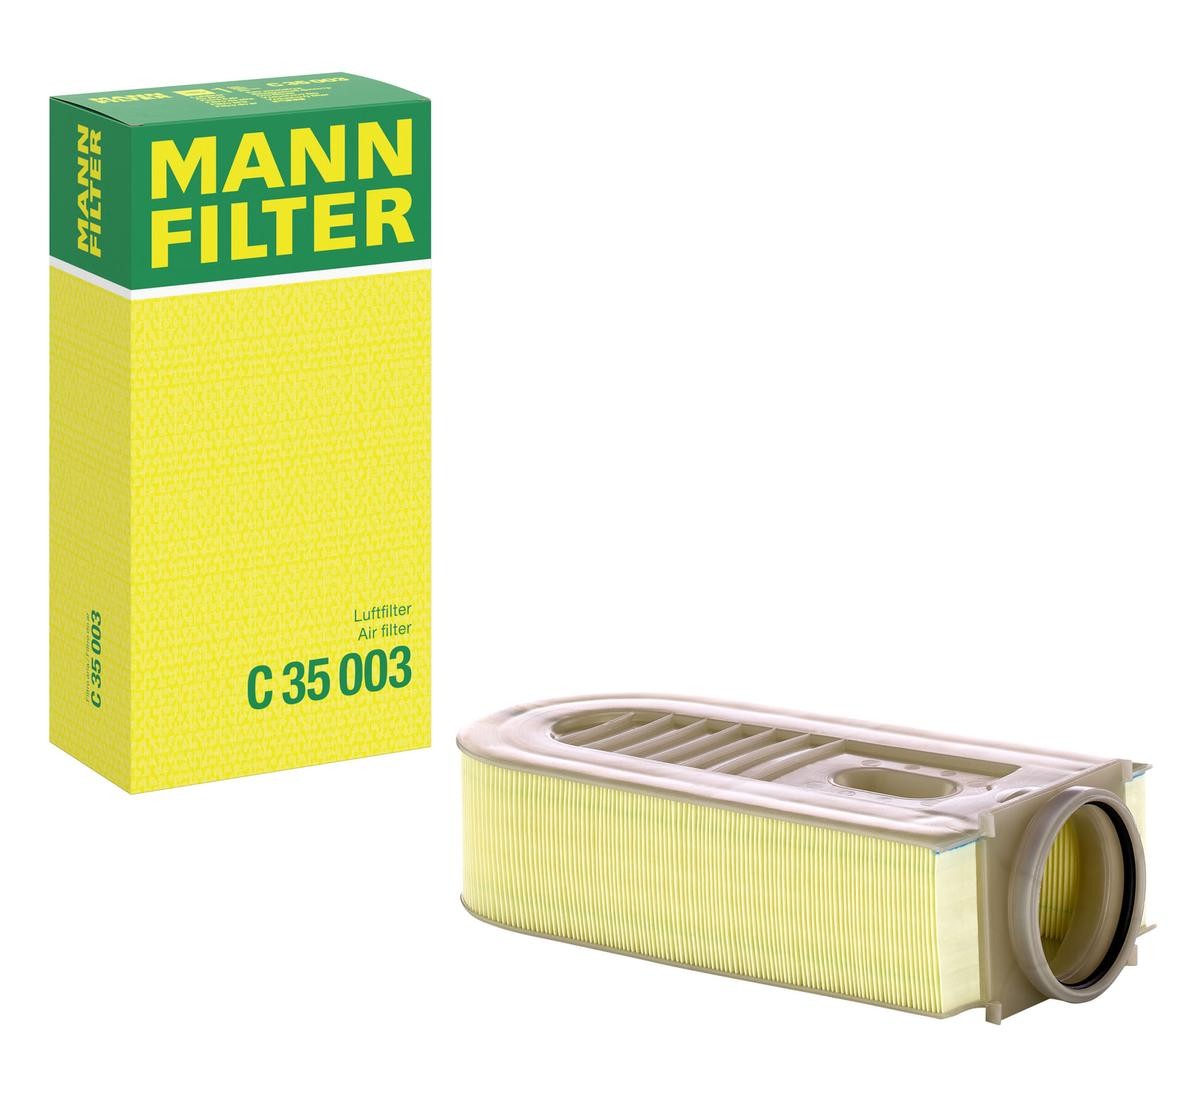 MANN-FILTER Air filter C 35 003